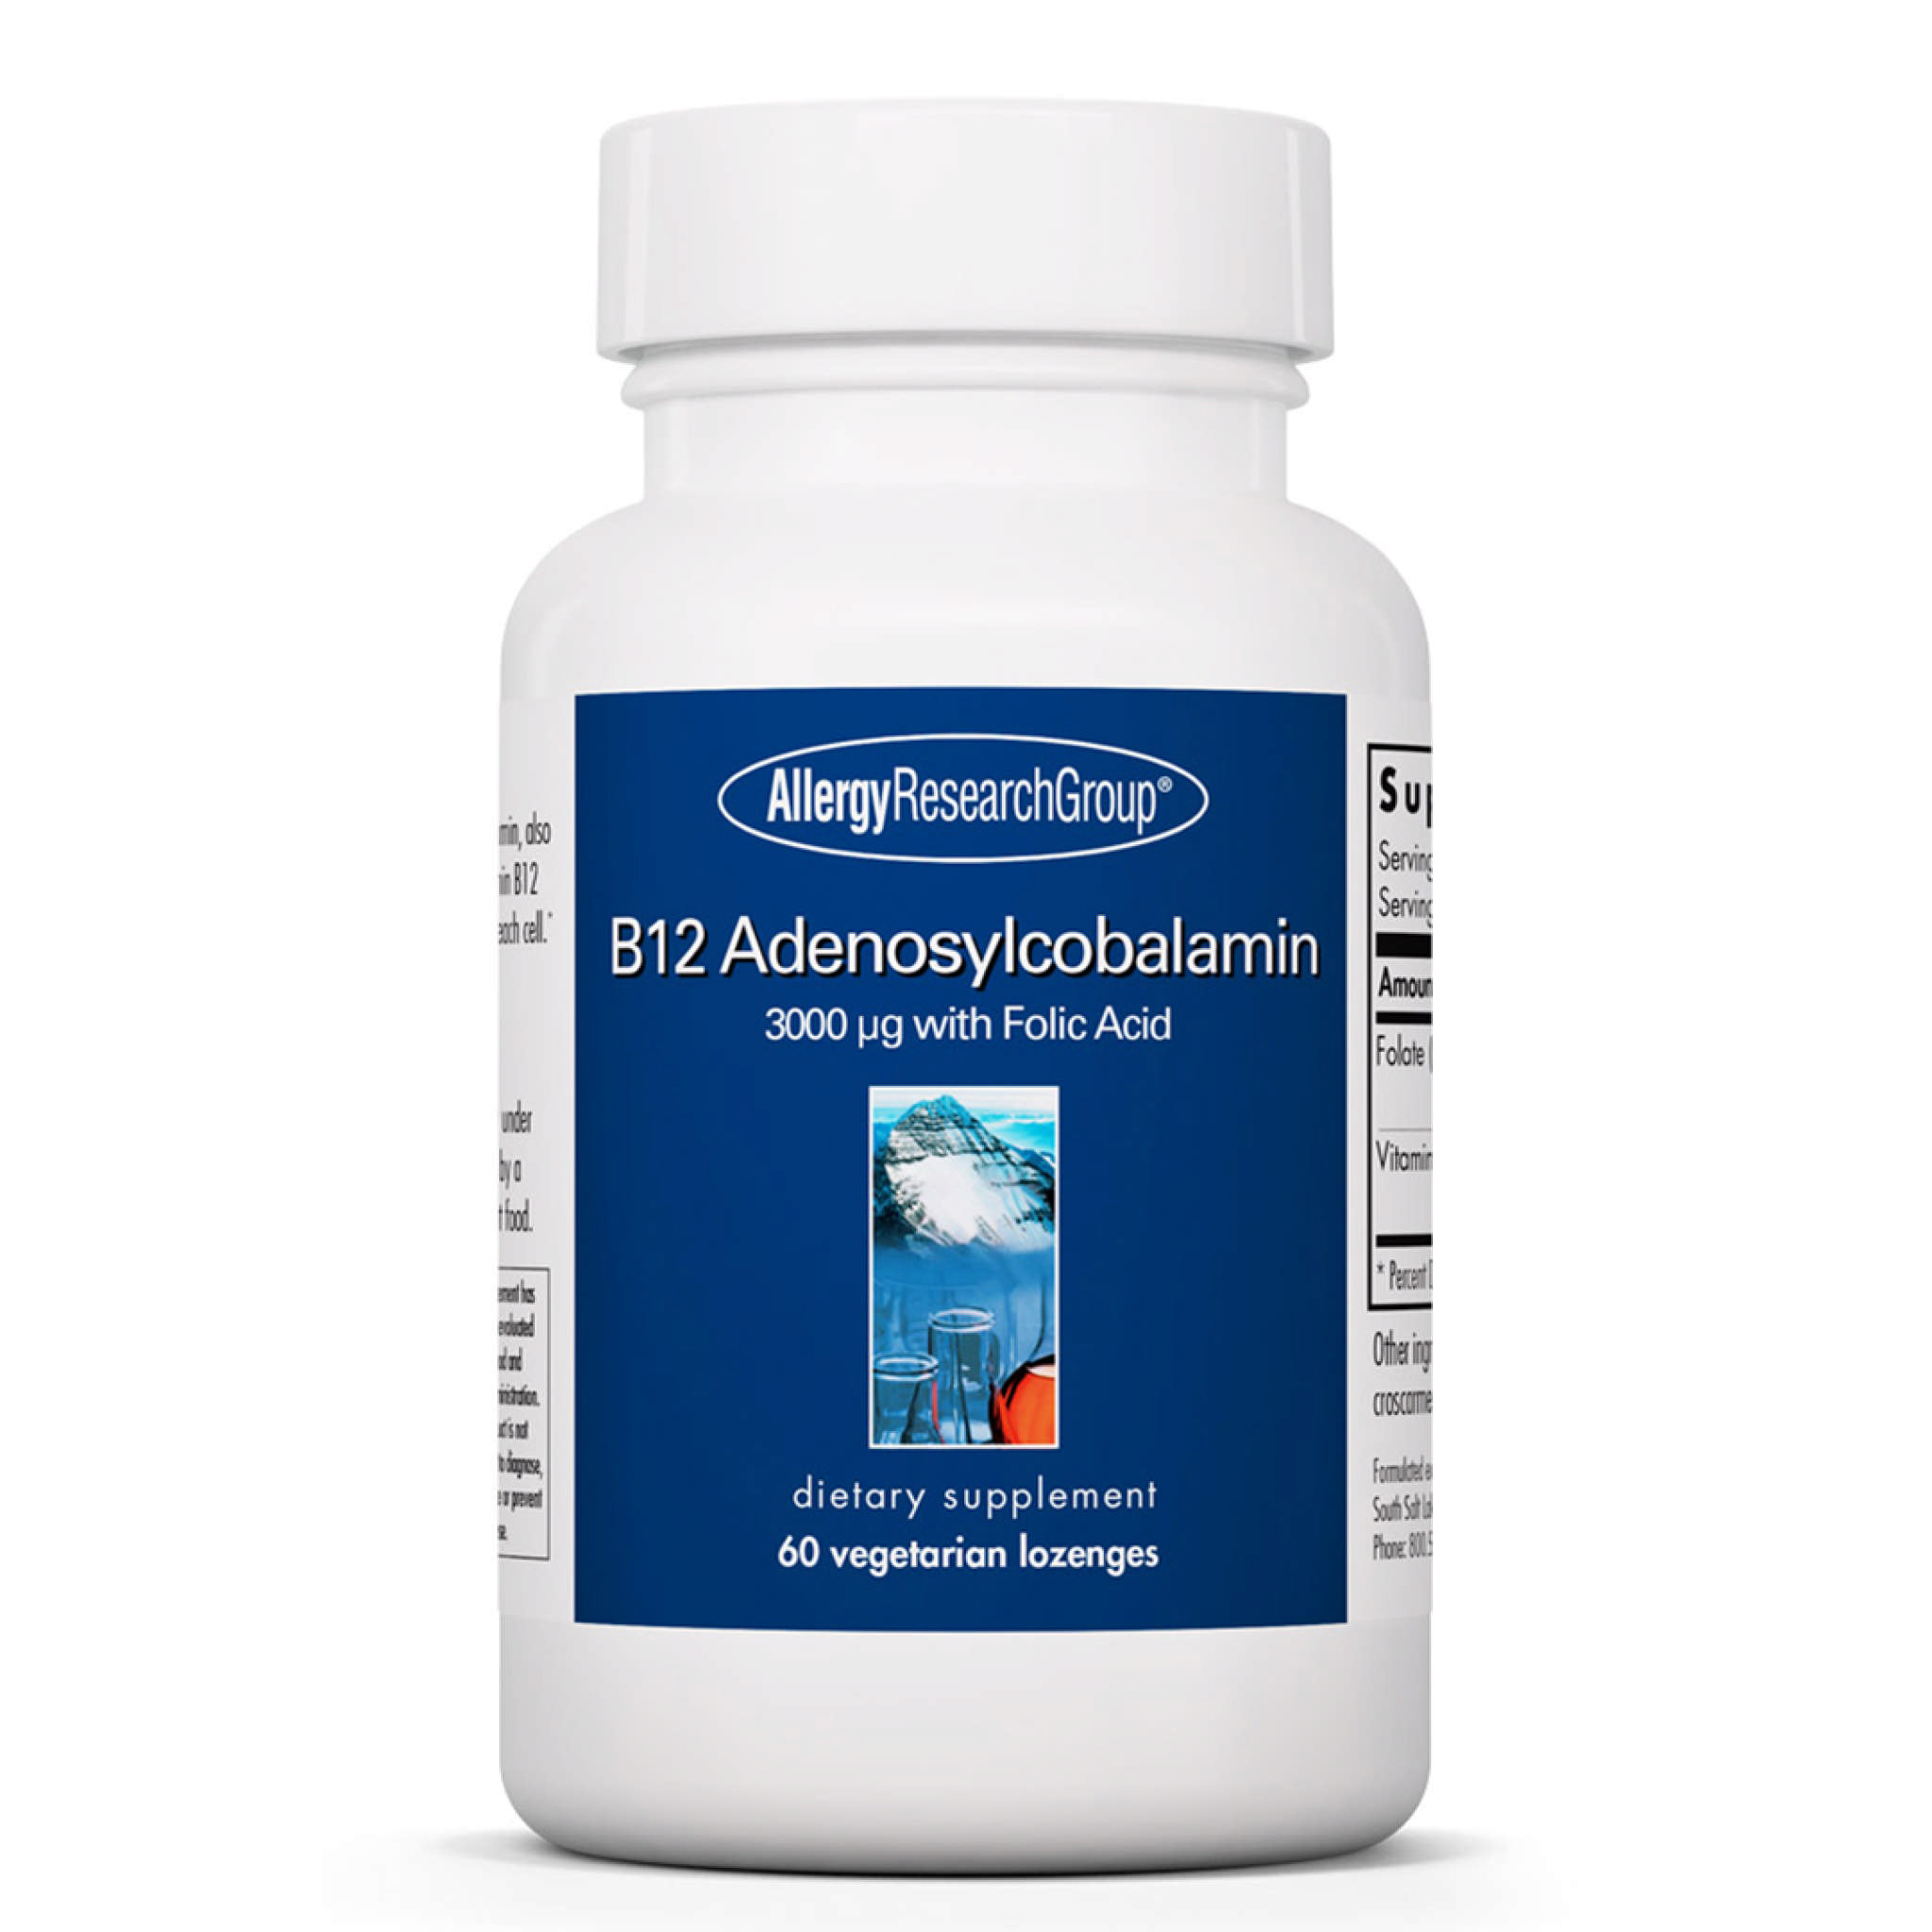 Allergy Research Group - B12 Adenosylcobalamin